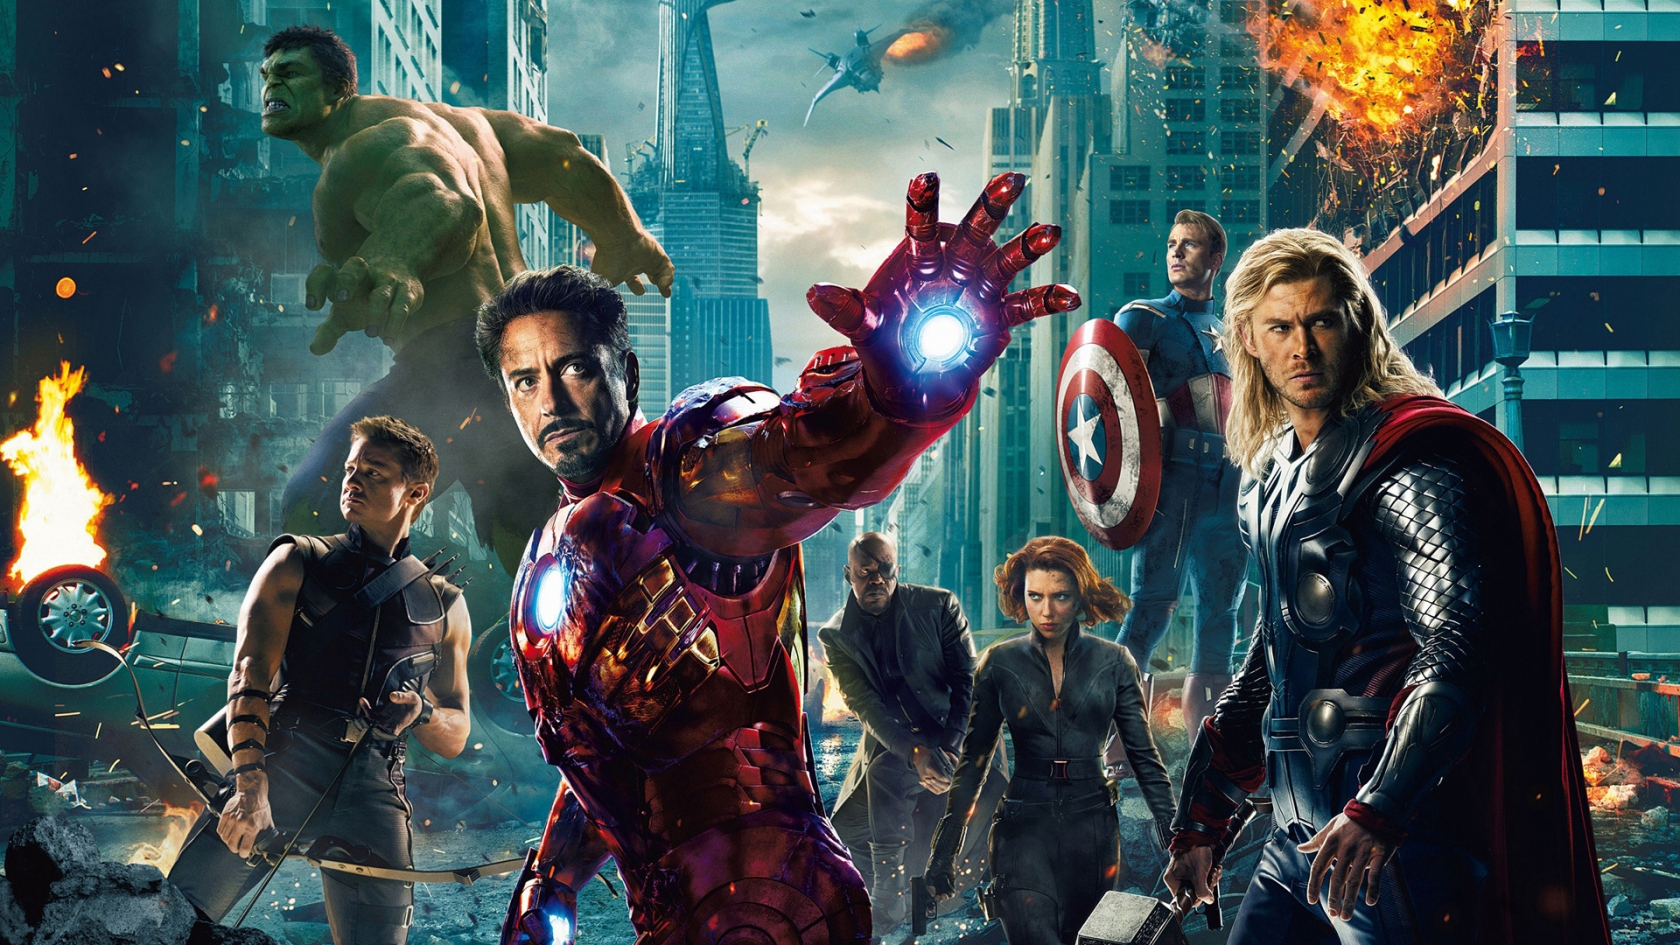 The Avengers for 1680 x 945 HDTV resolution